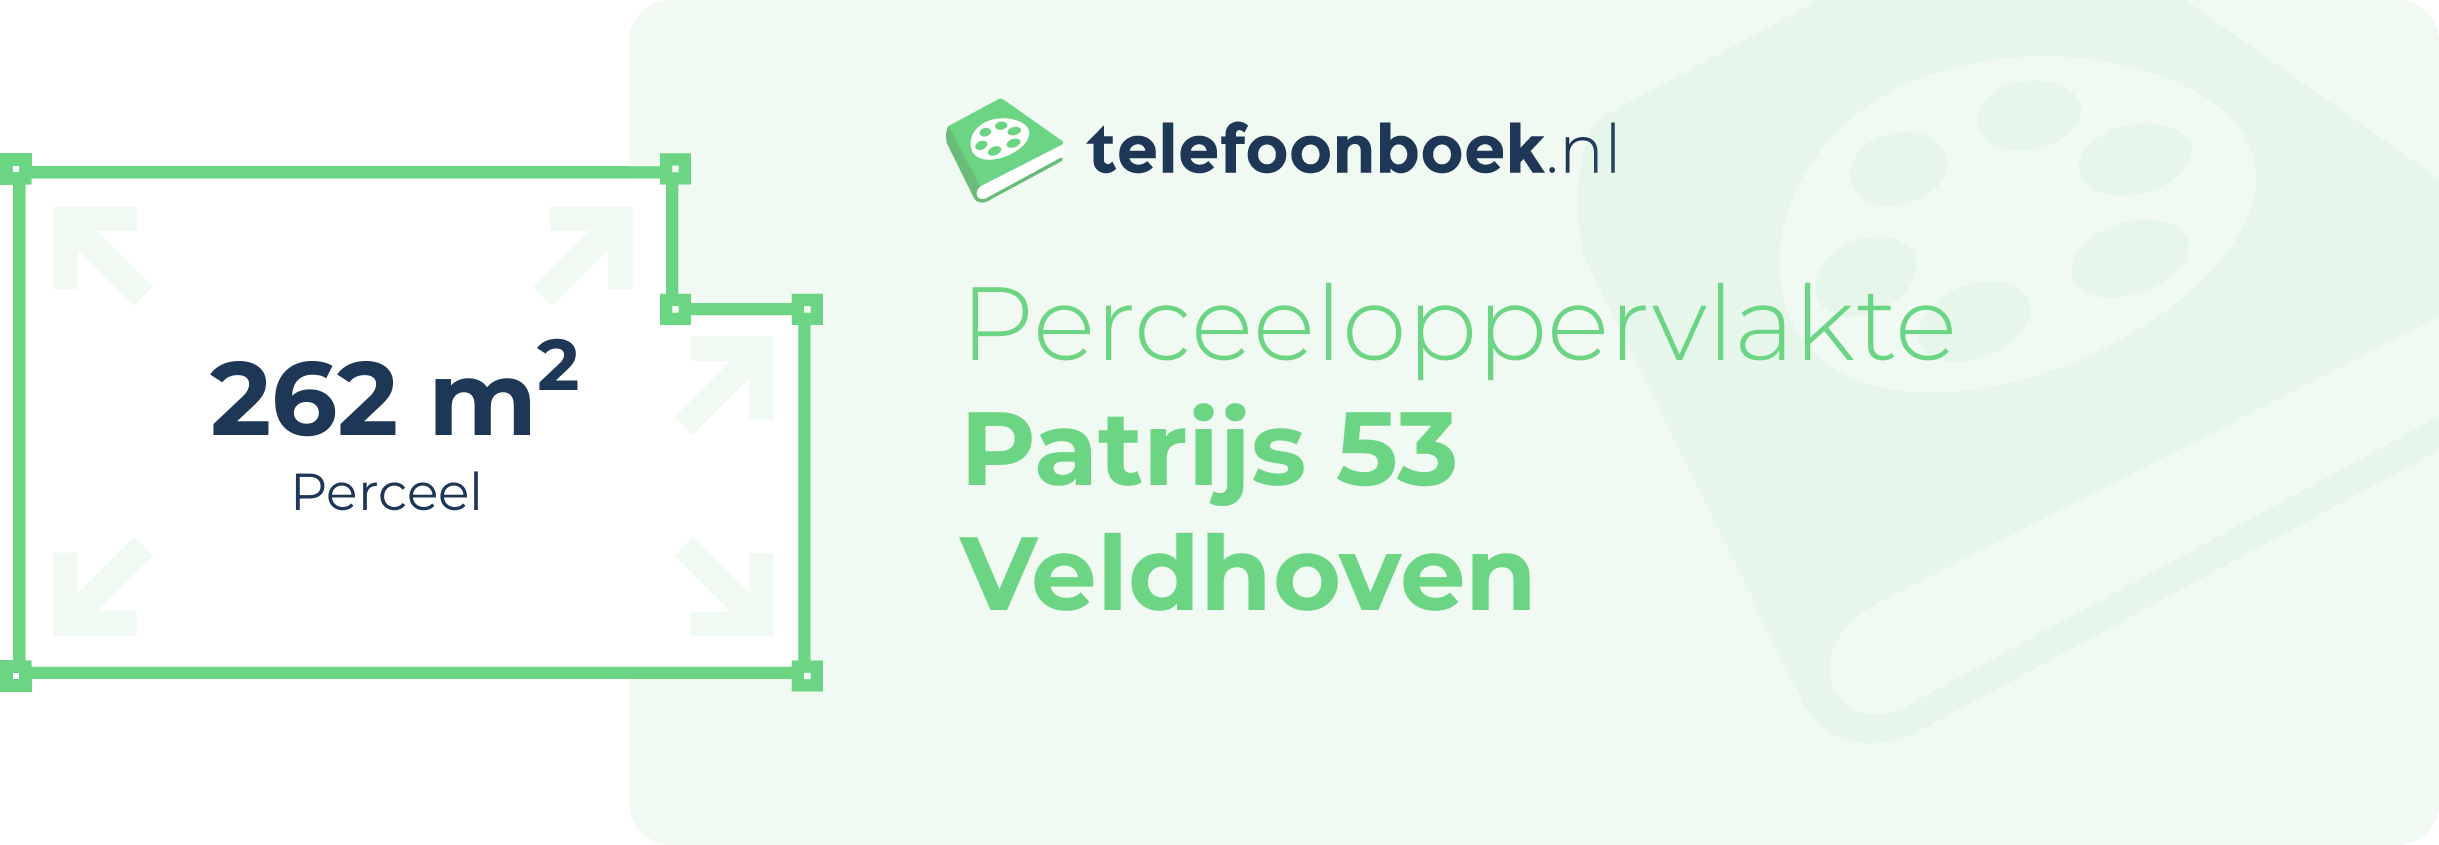 Perceeloppervlakte Patrijs 53 Veldhoven